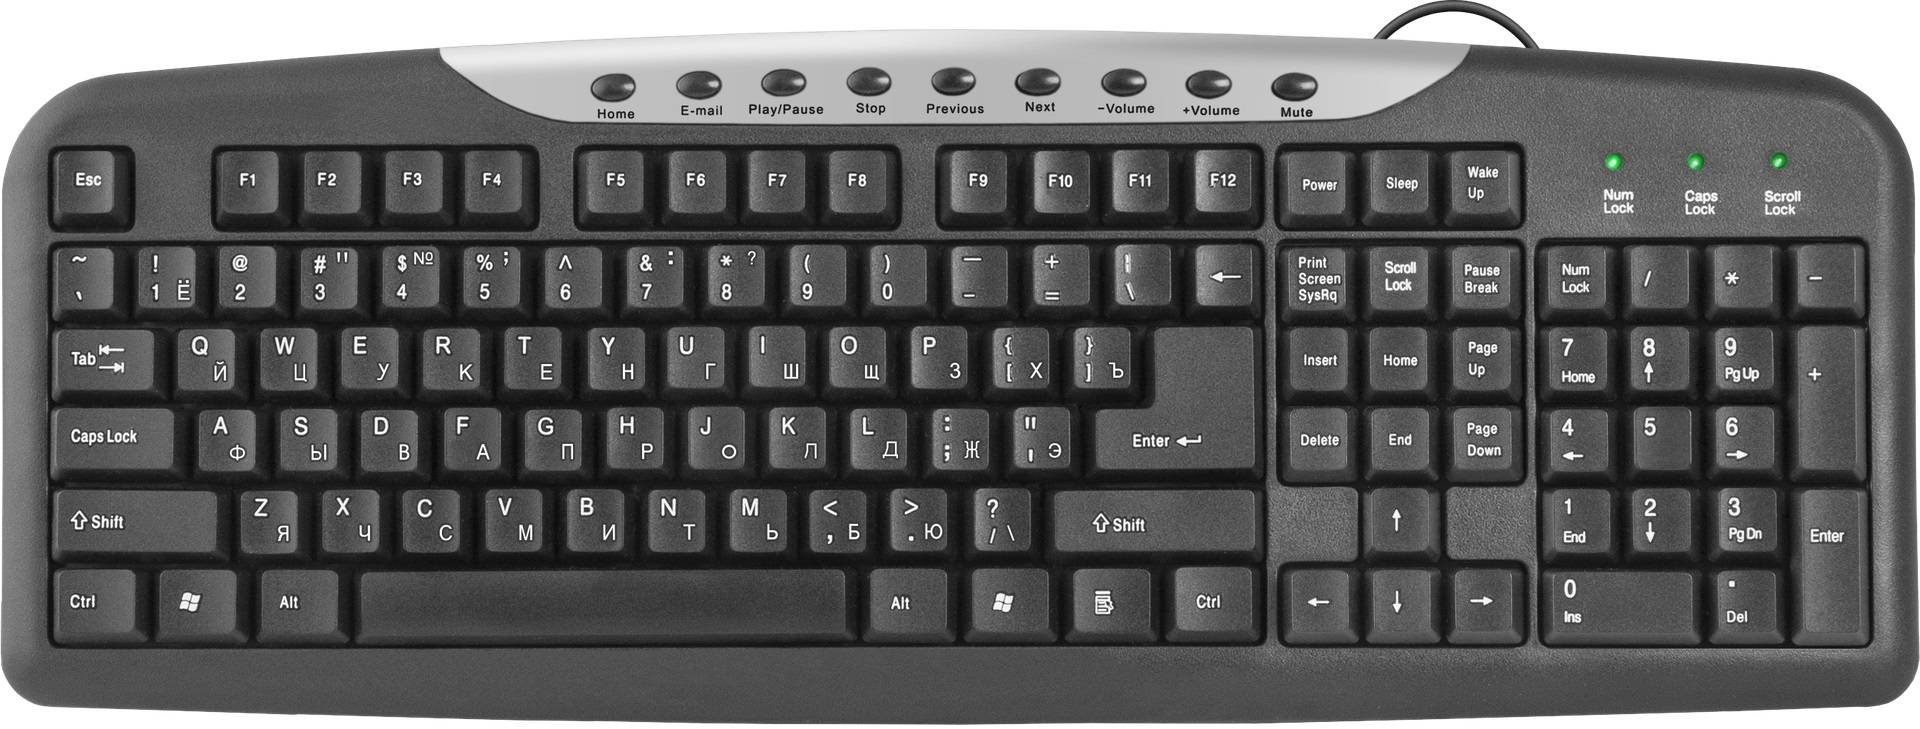 Defender Проводная клавиатура HM-830 RU, полноразмерная, 9 горячих клавиш, чёрный, USD.